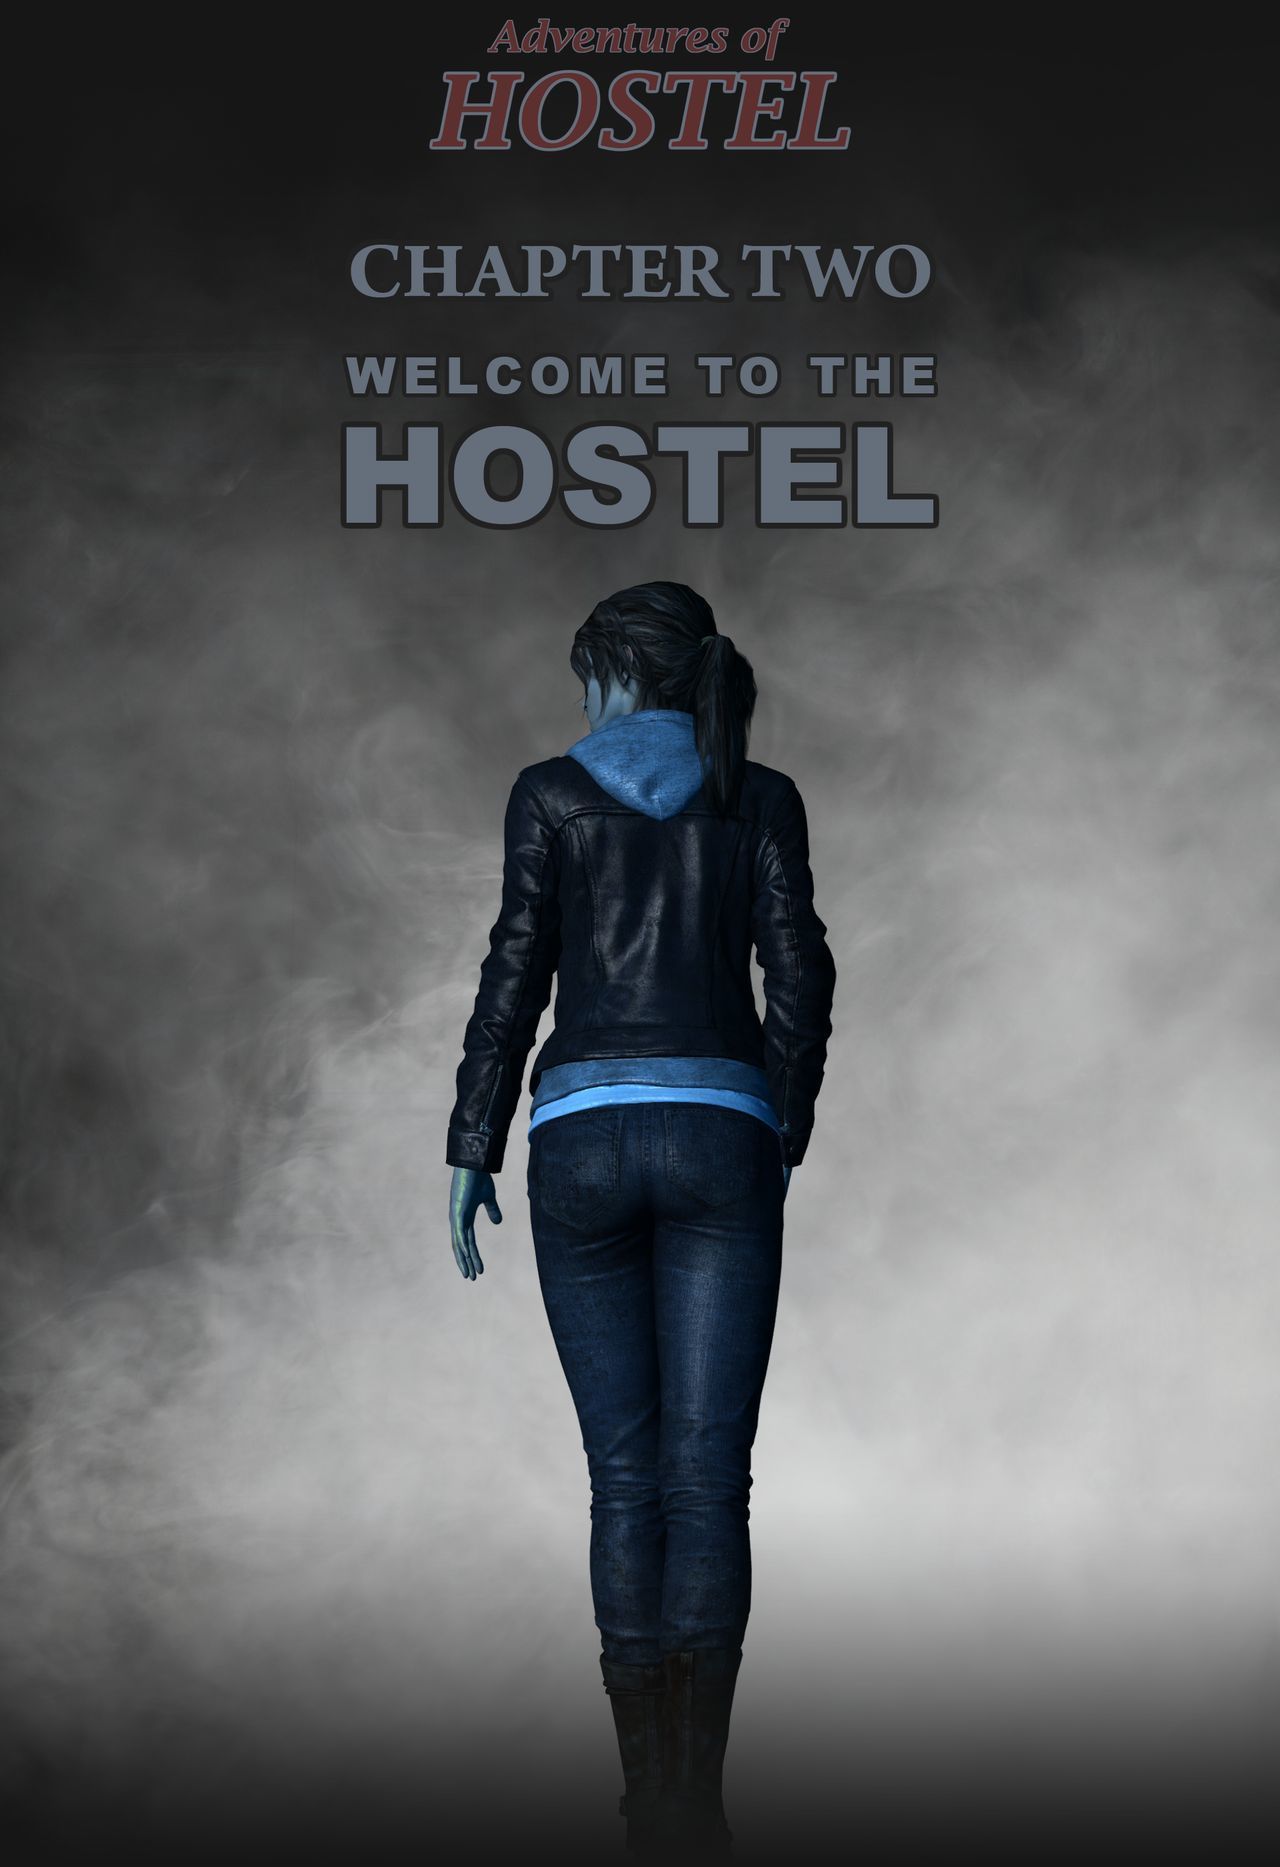 przygody z hostel - Rozdział 1-2 - część 2